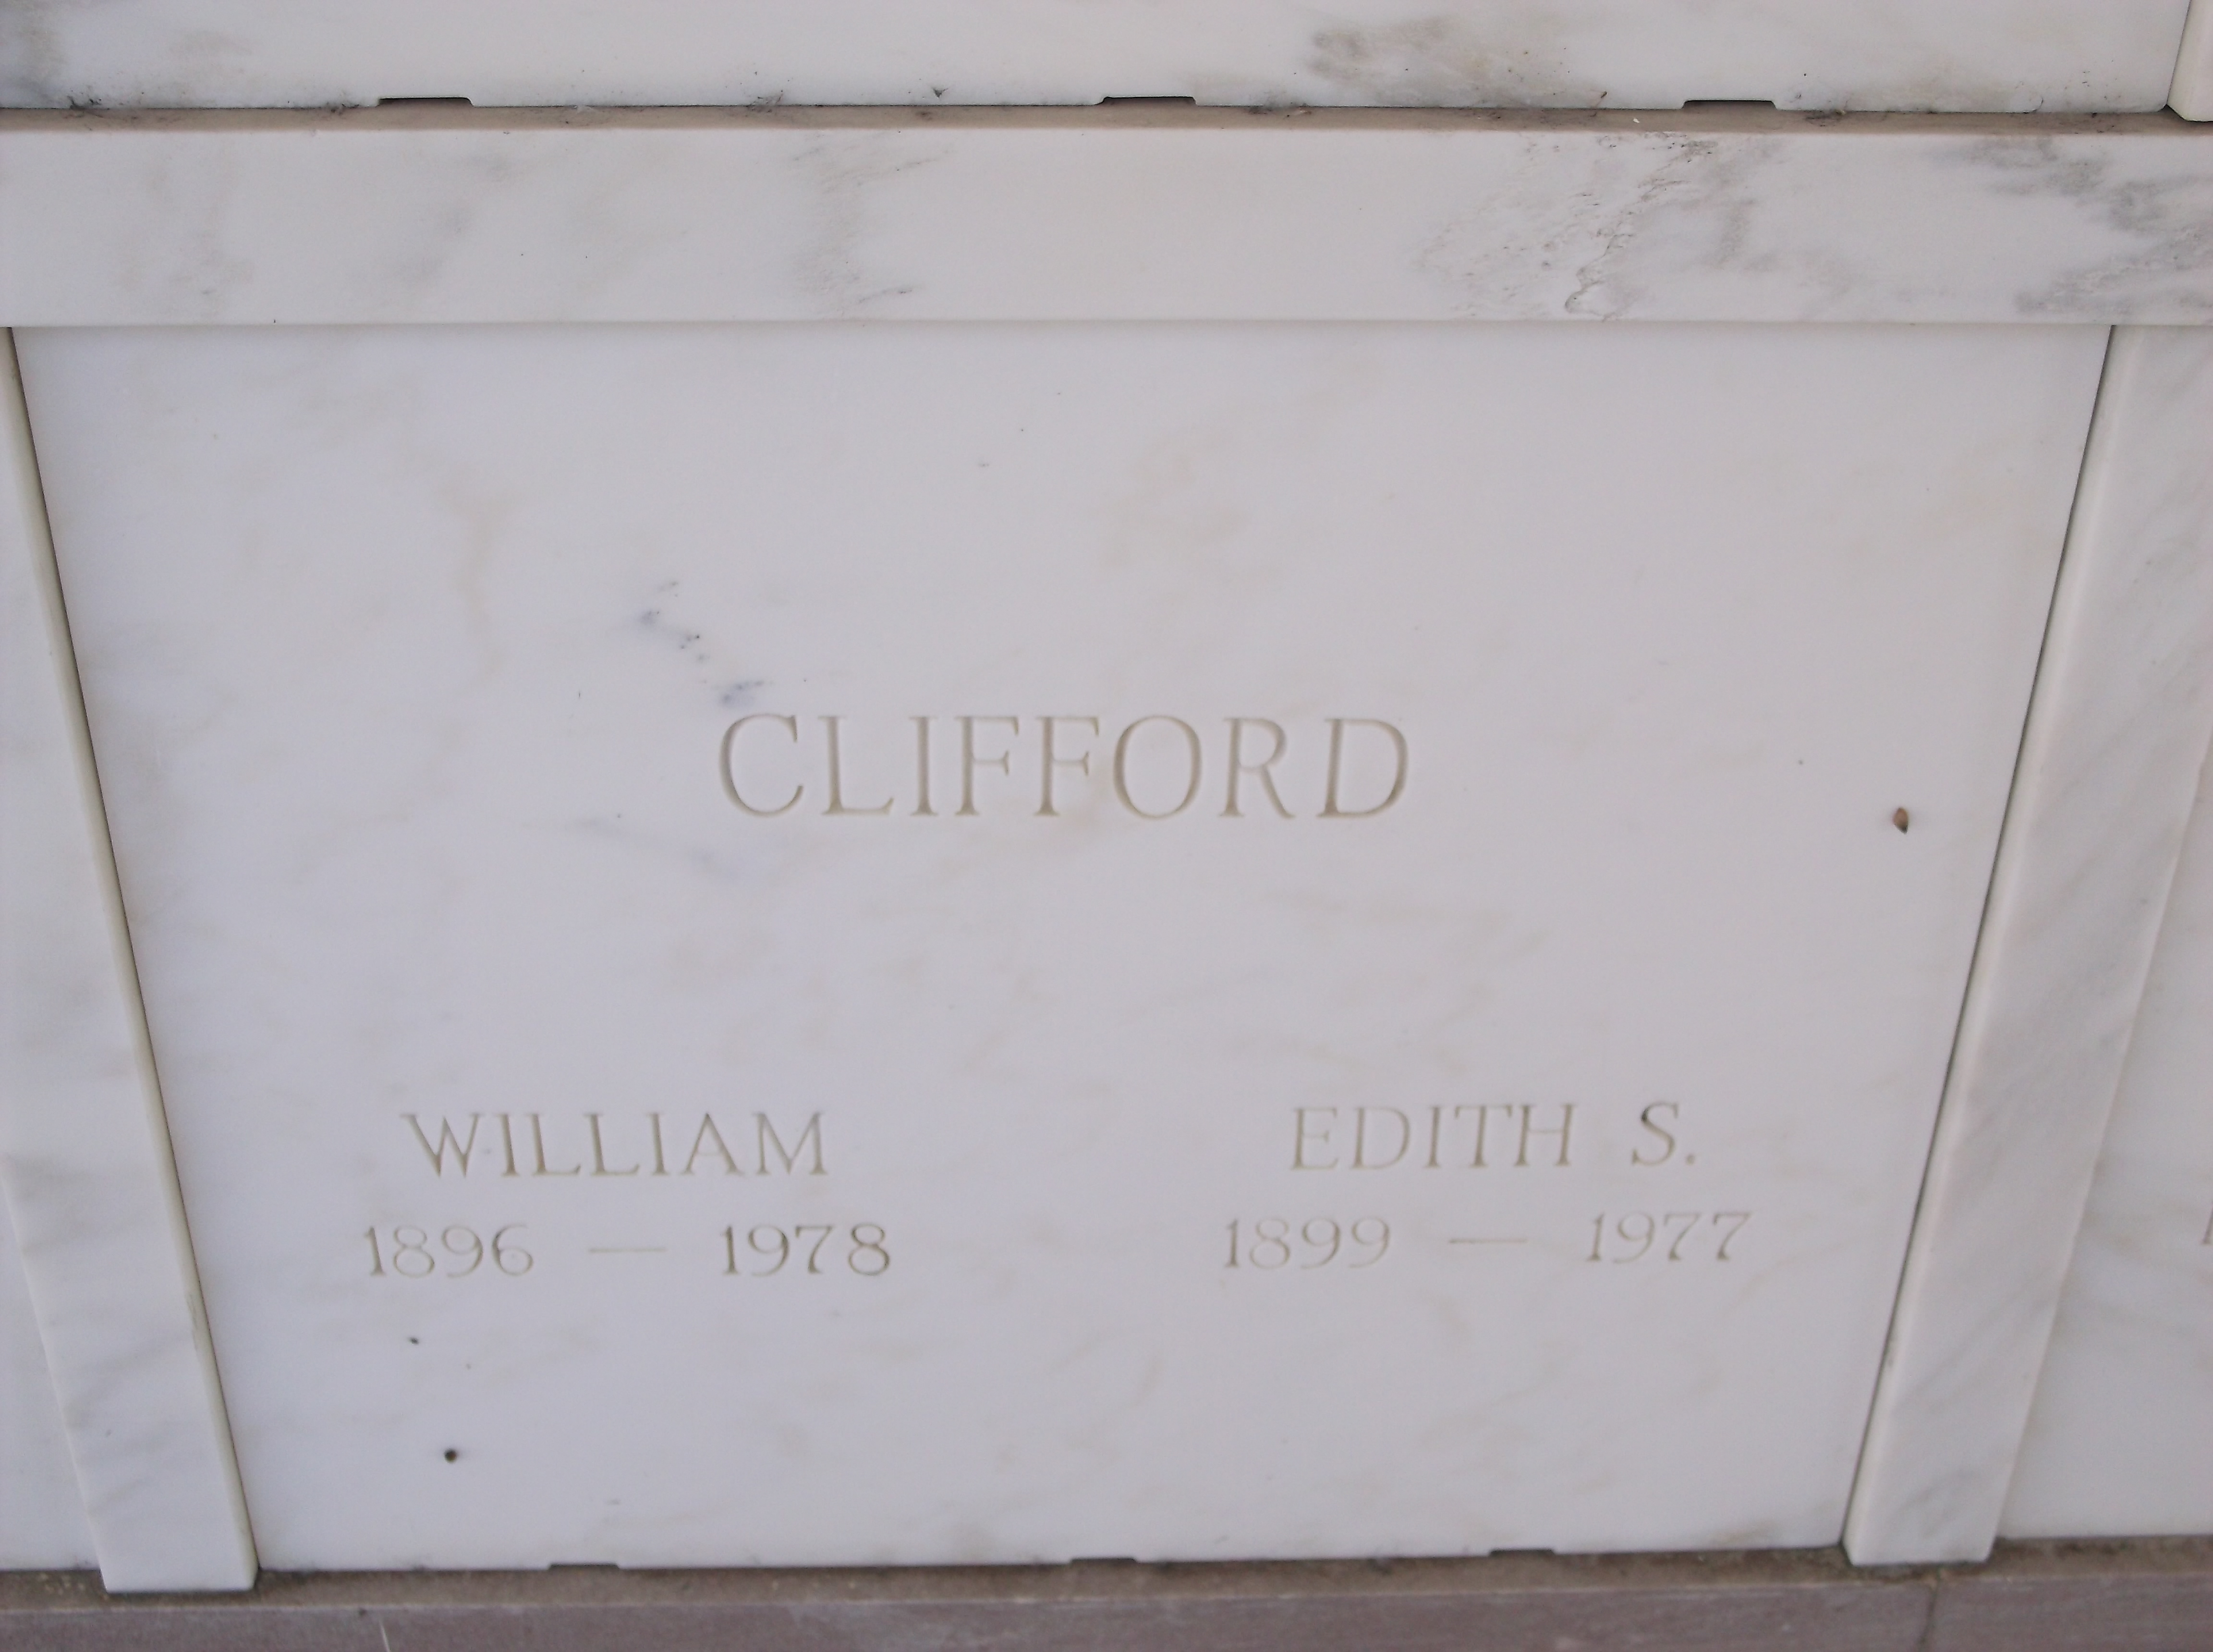 William Clifford